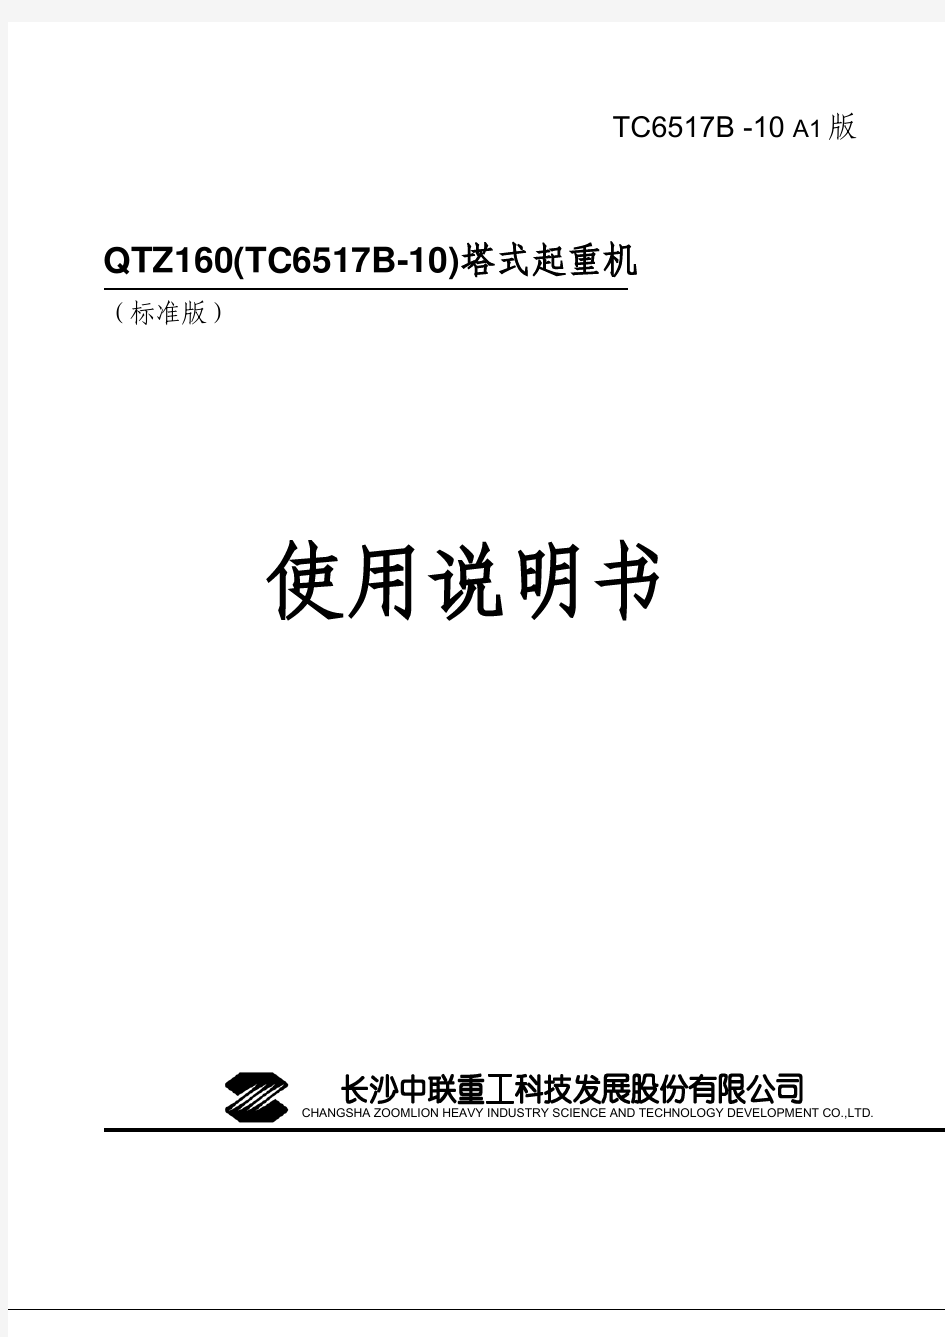 中联TC6517B-10塔式起重机使用说明书